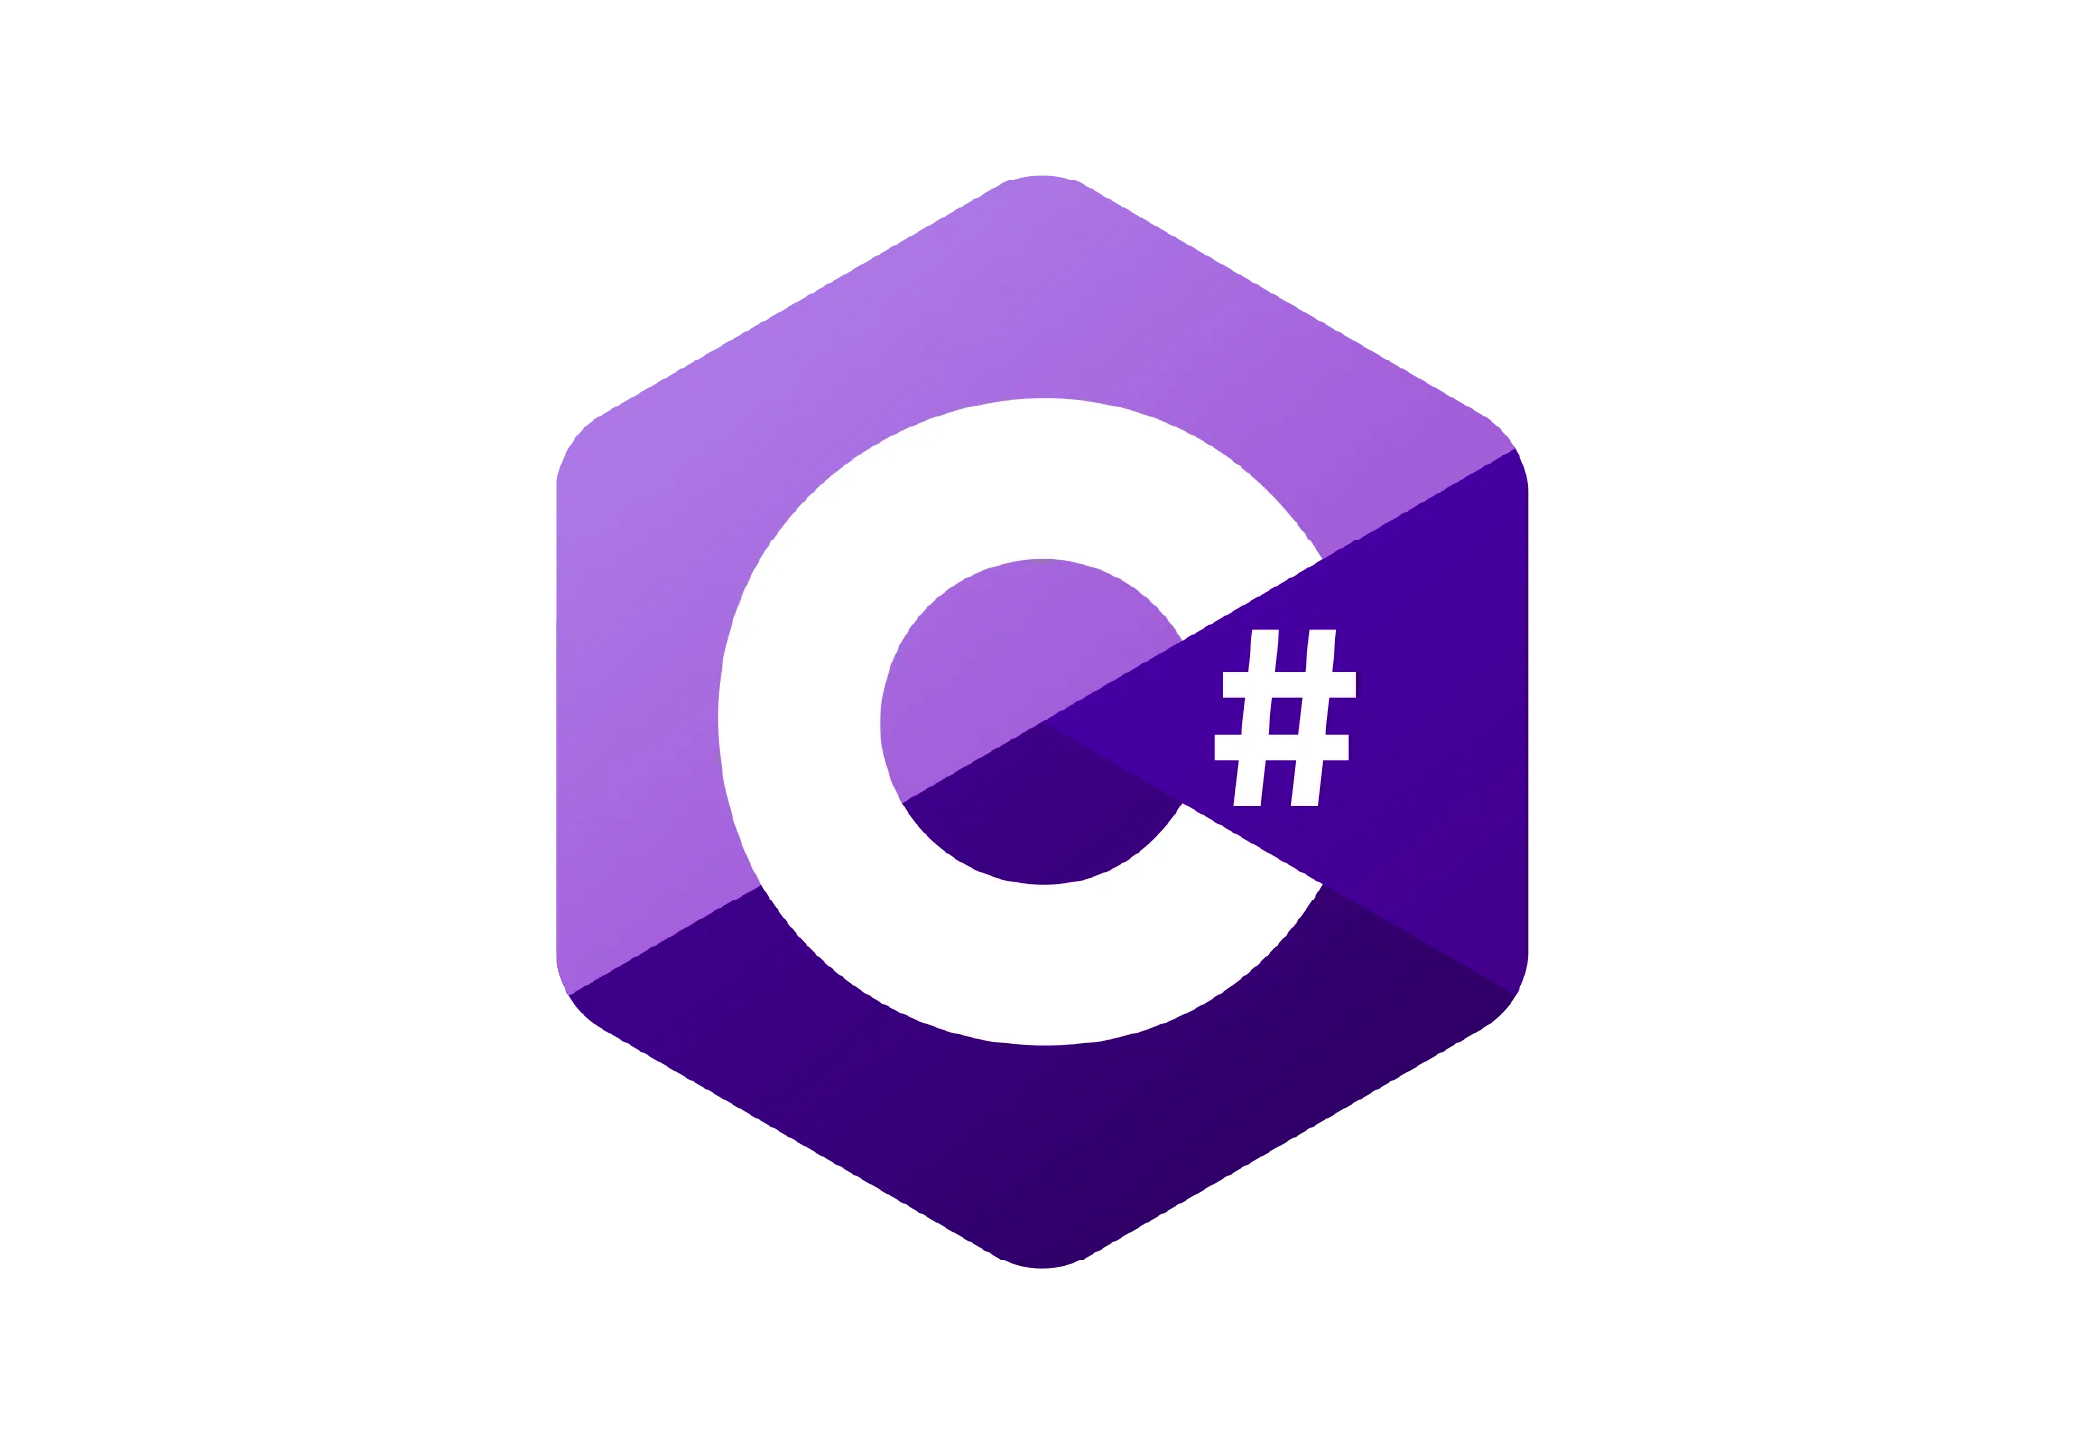 C# language logo